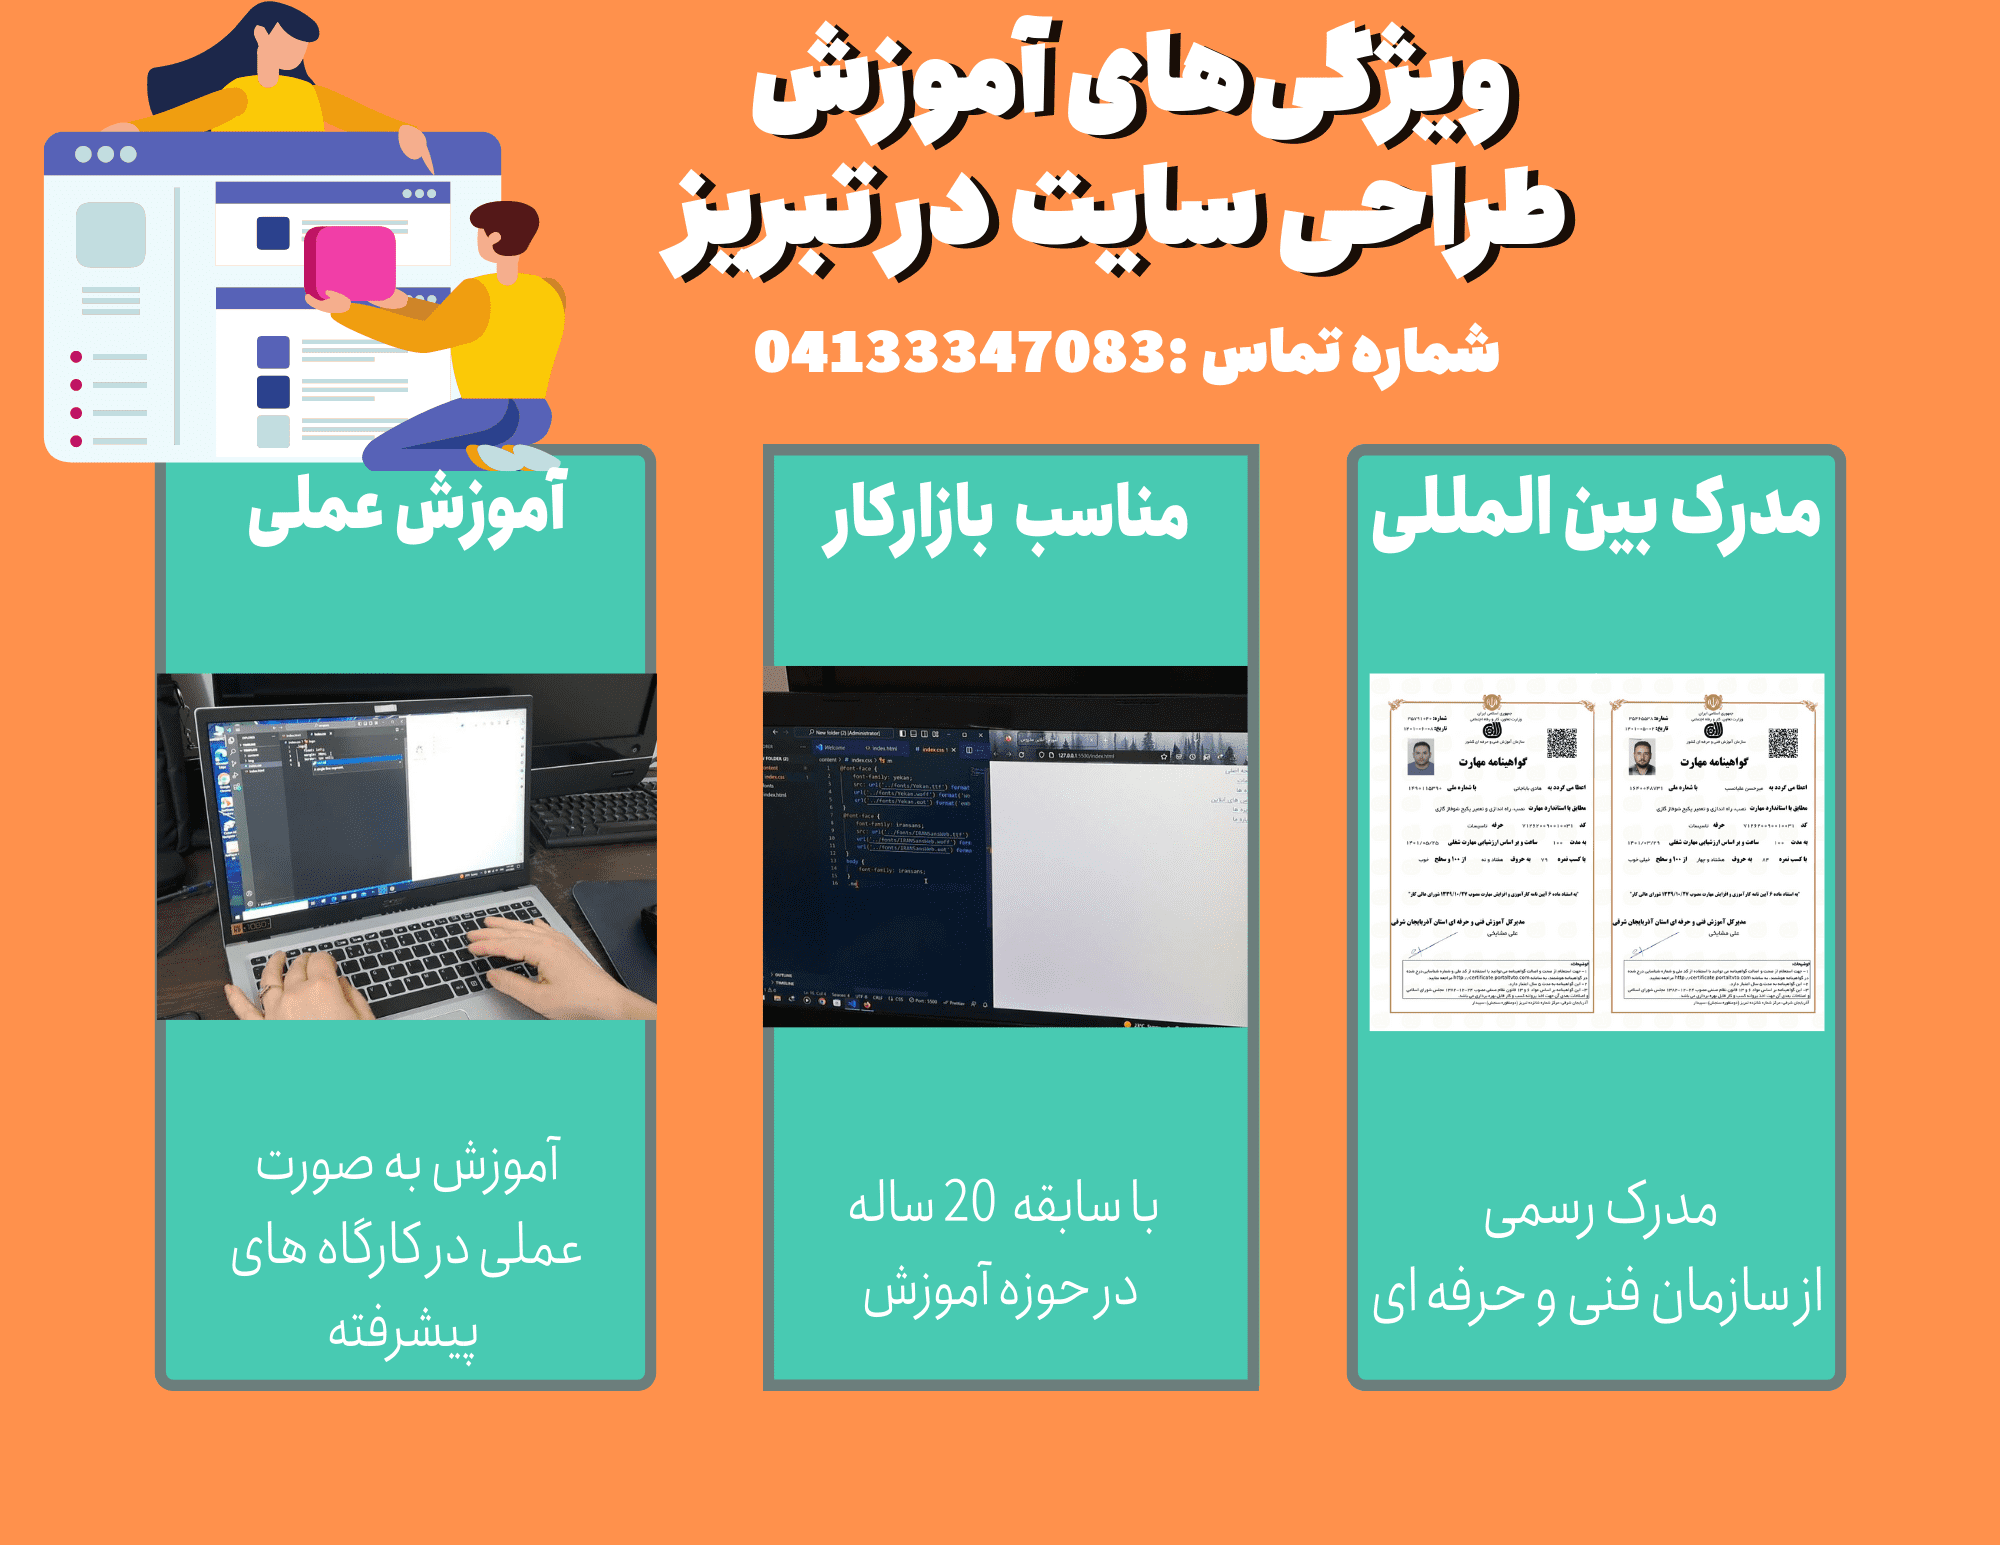 ویژگی های آموزش طراحی سایت در تبریز